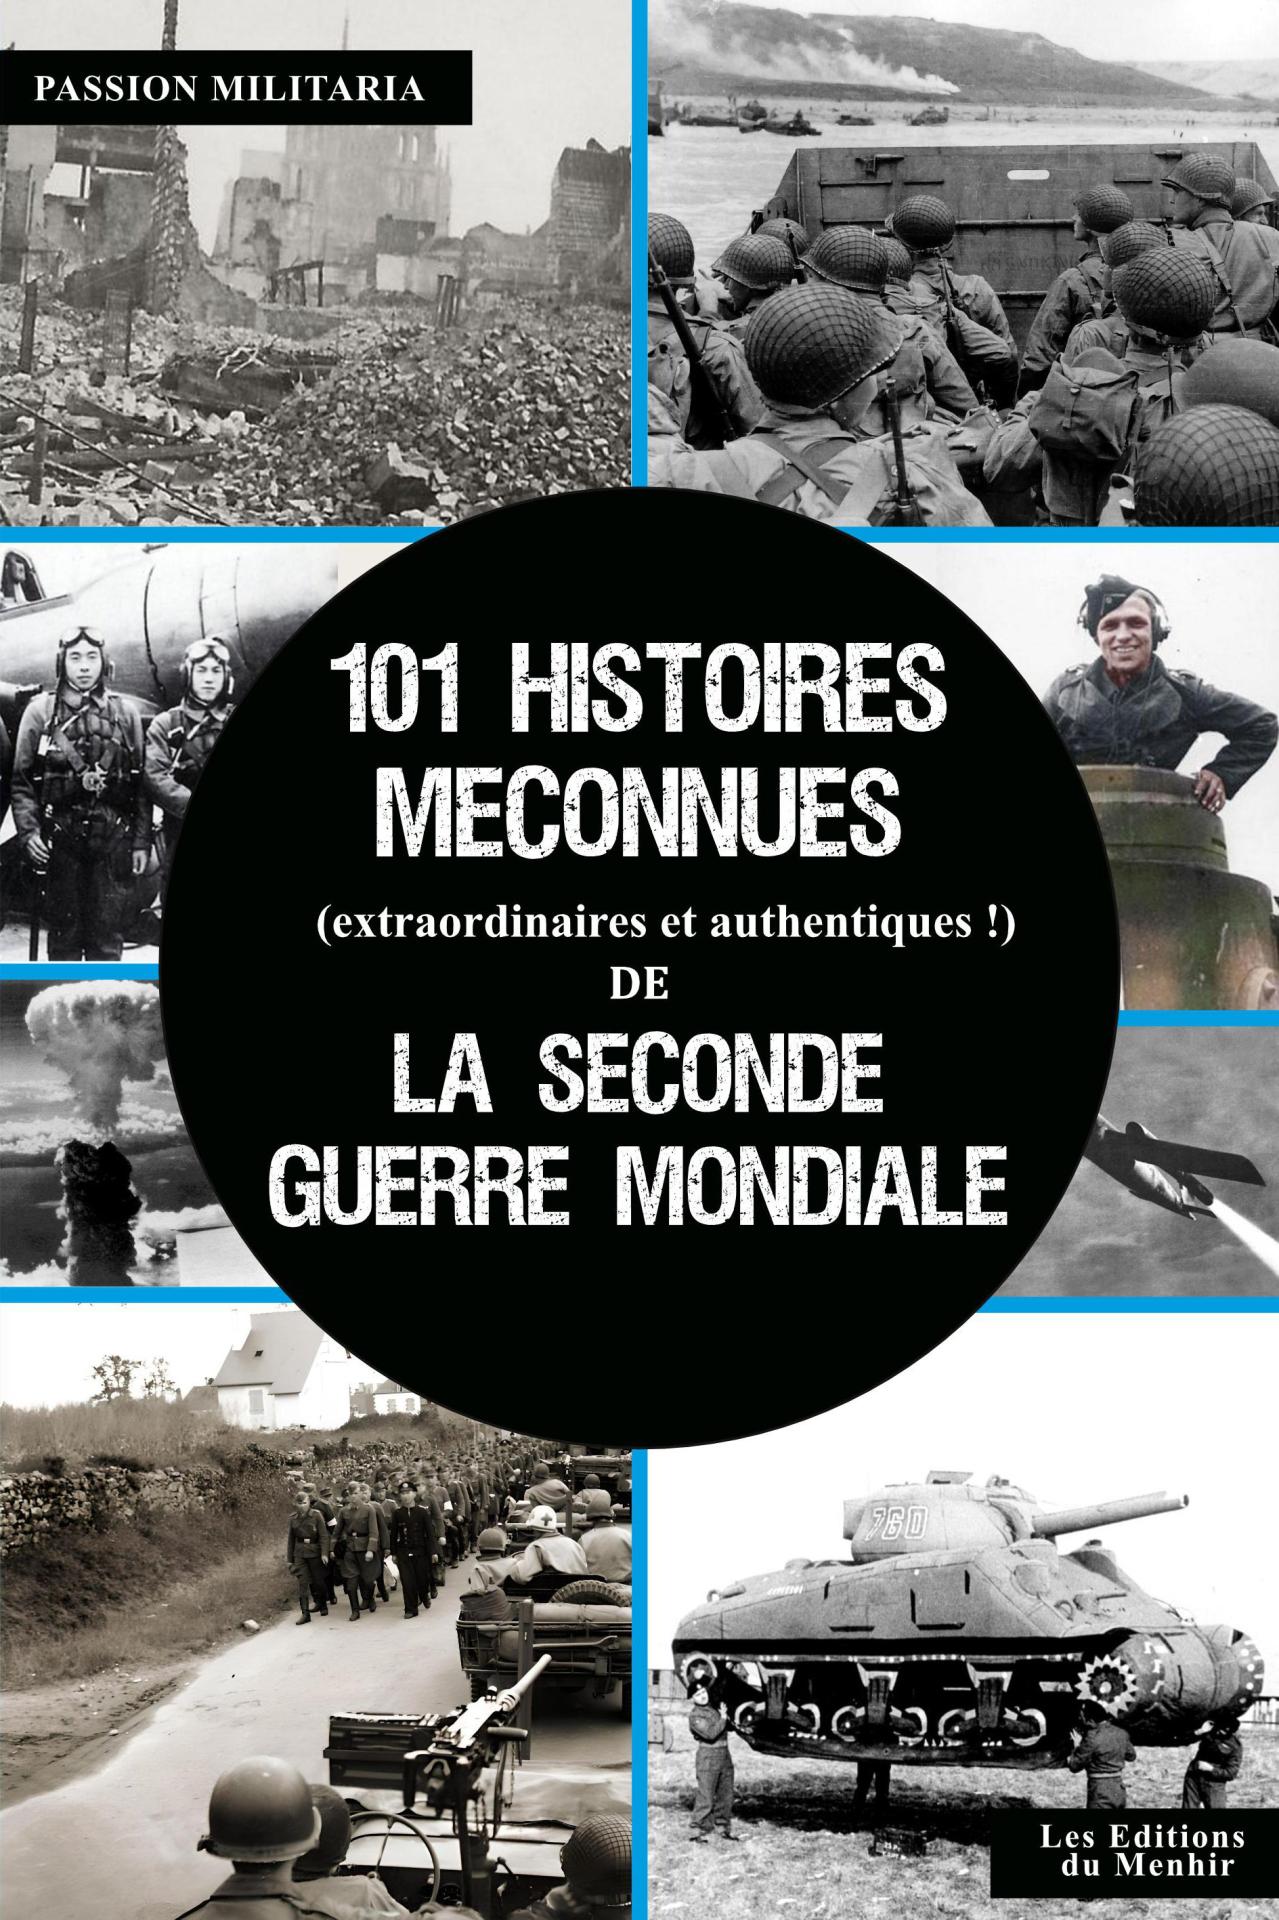 101 histoires méconnues(extraordinaires et authentiques !) de la Seconde Guerre Mondiale